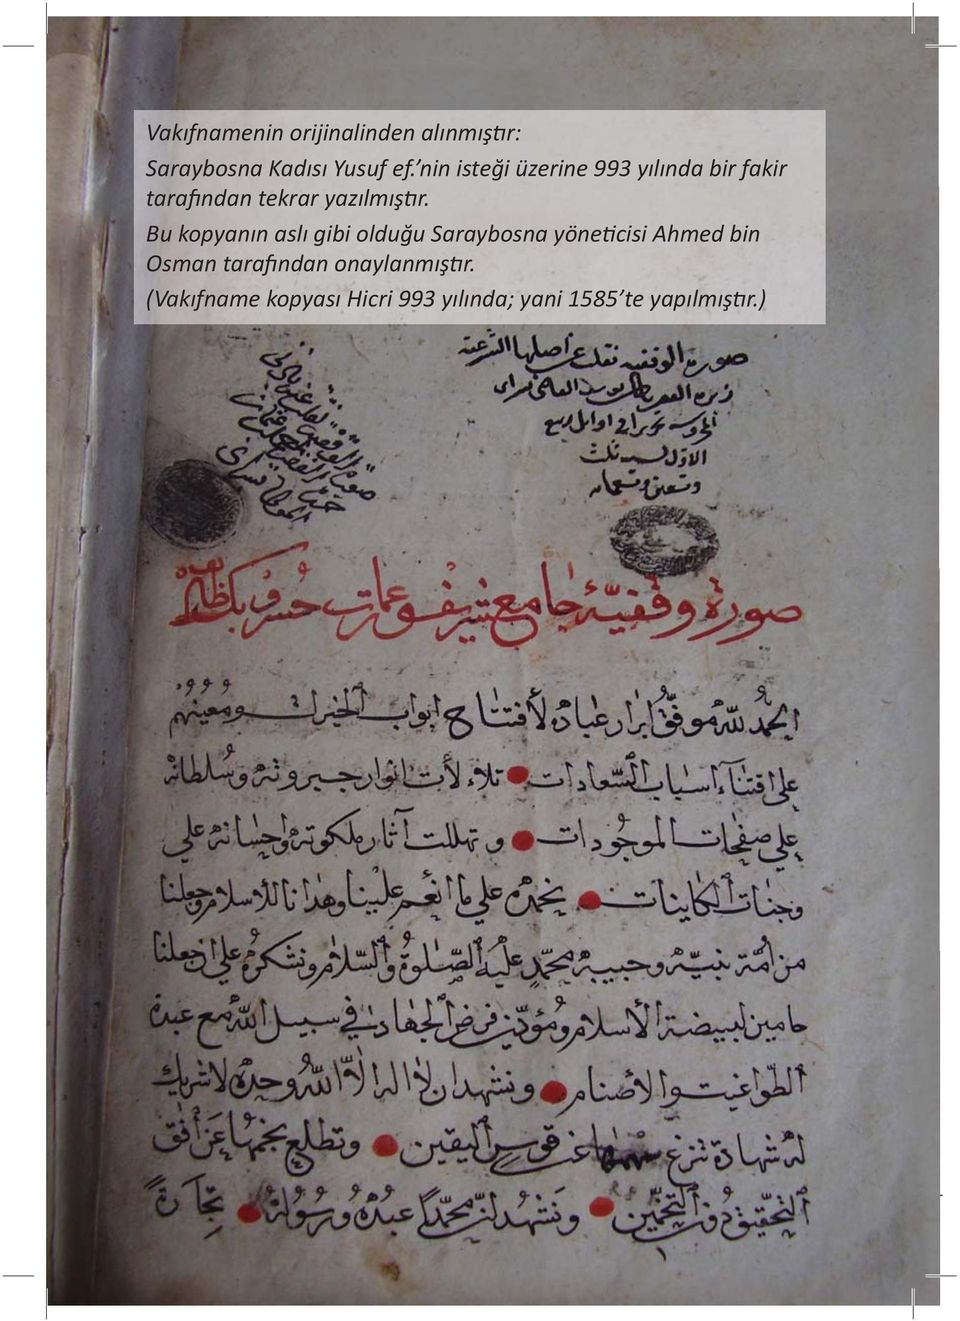 Bu kopyanın aslı gibi olduğu Saraybosna yöneticisi Ahmed bin Osman